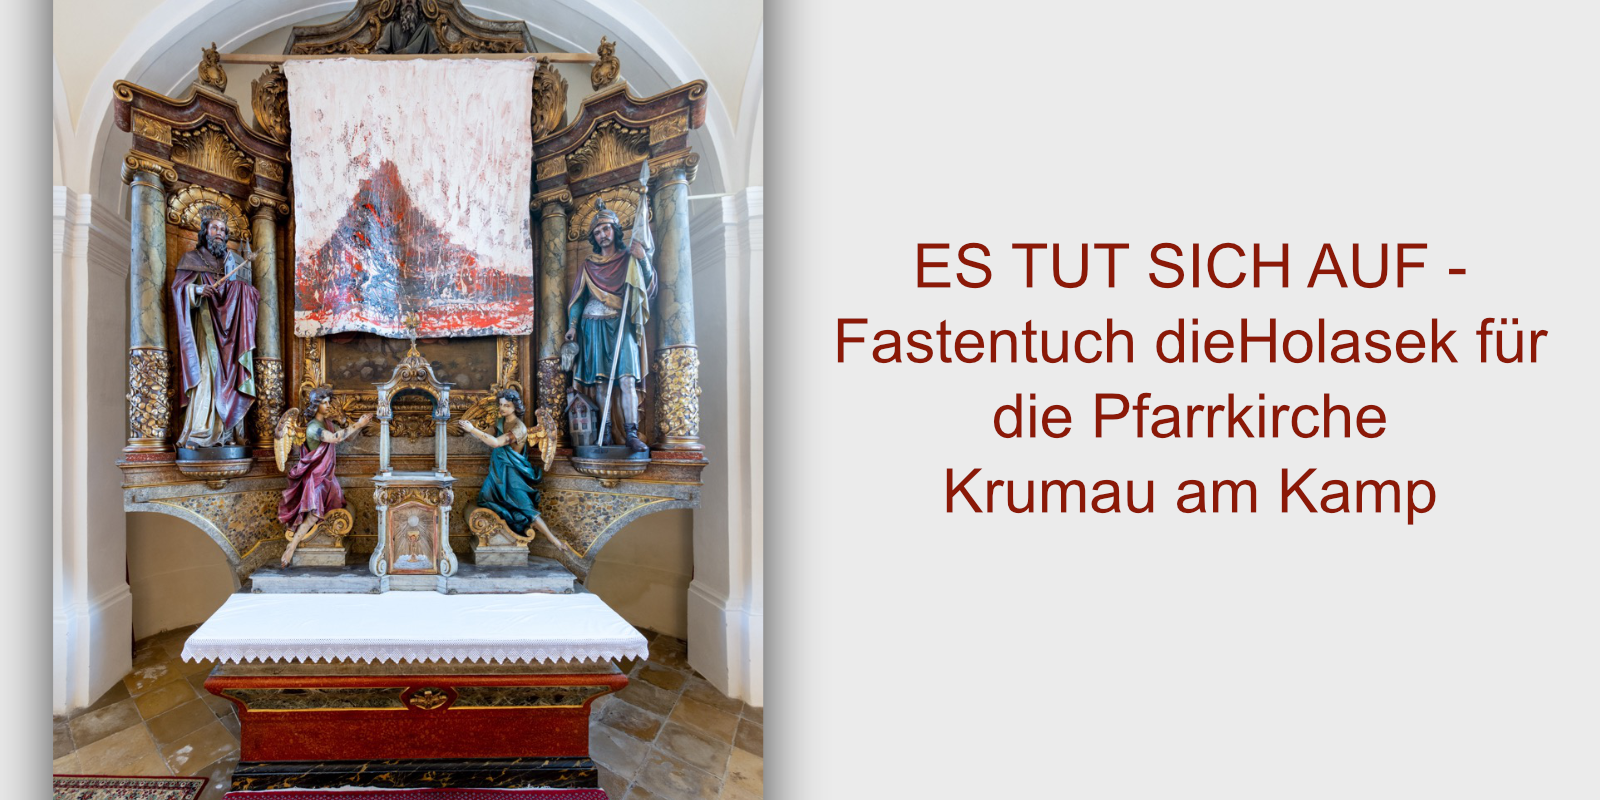 ES TUT SICH AUF - Fastentuch dieHolasek für die Pfarrkirche Krumau am Kamp